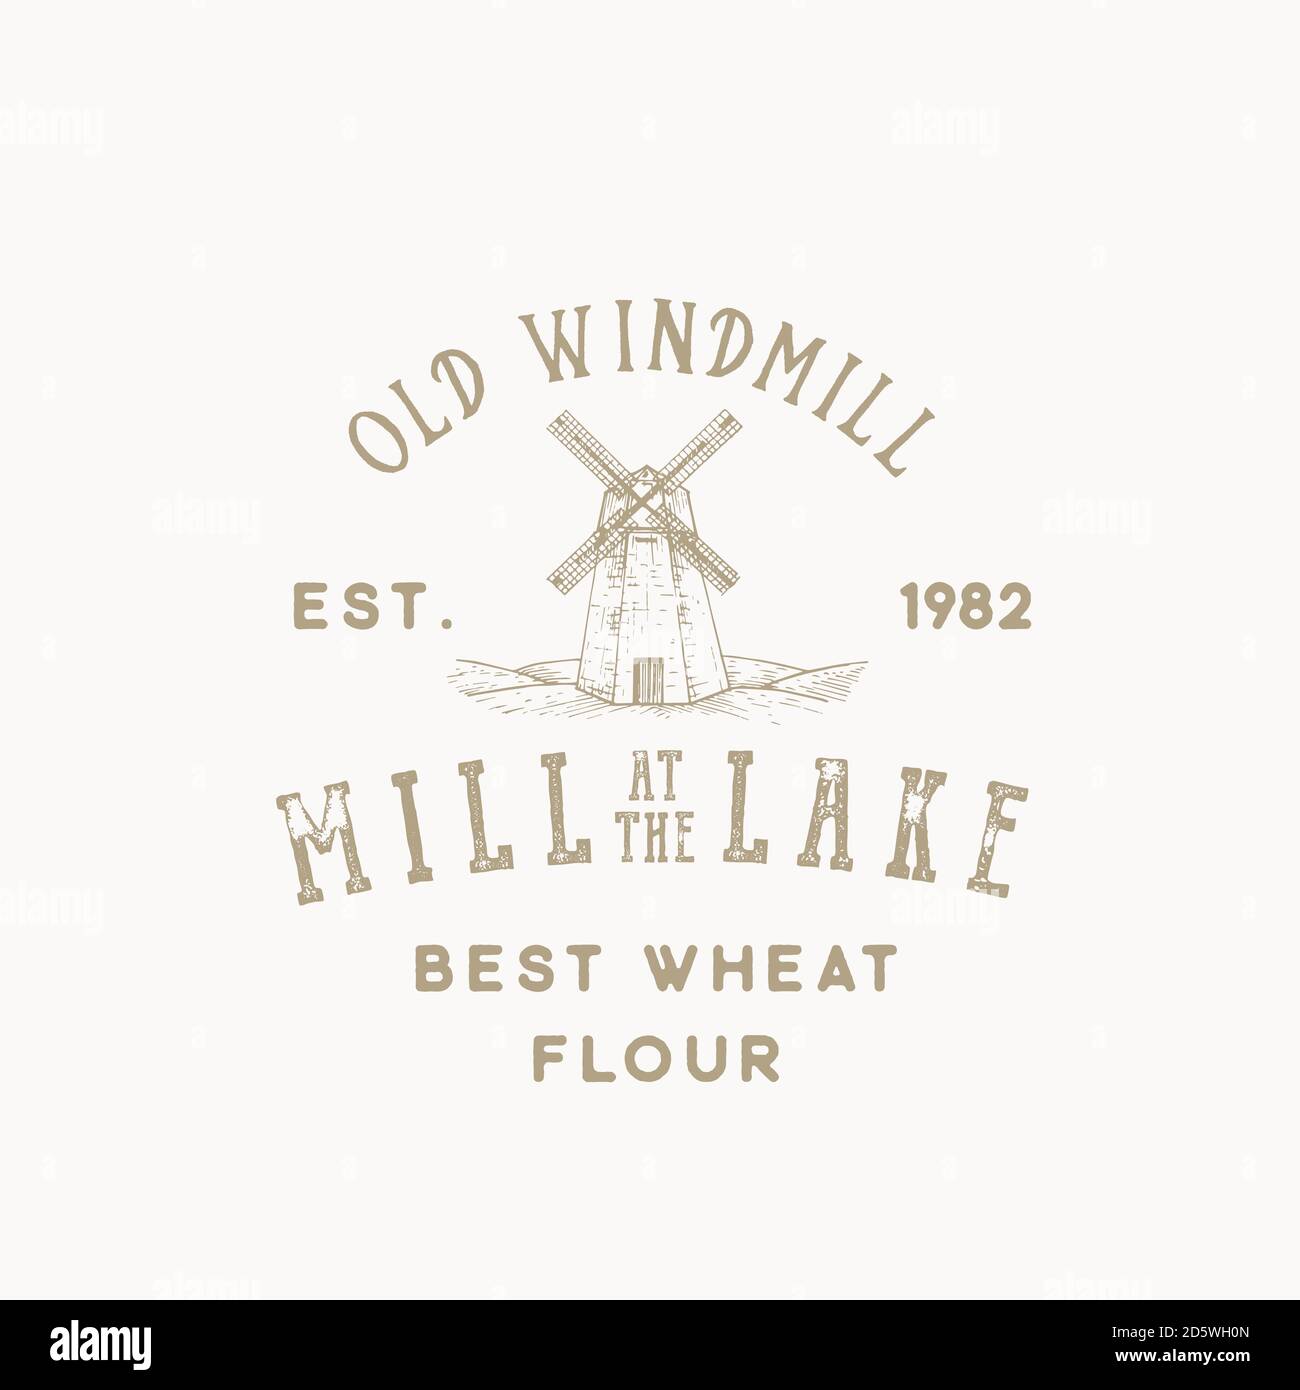 Alte Windmühle Bäckerei abstrakte Vektor-Zeichen, Symbol oder Logo-Vorlage. Skizzenlandschaft mit Gebäudezeichnung und Retro-Typografie. Vintage-Emblem. Stock Vektor